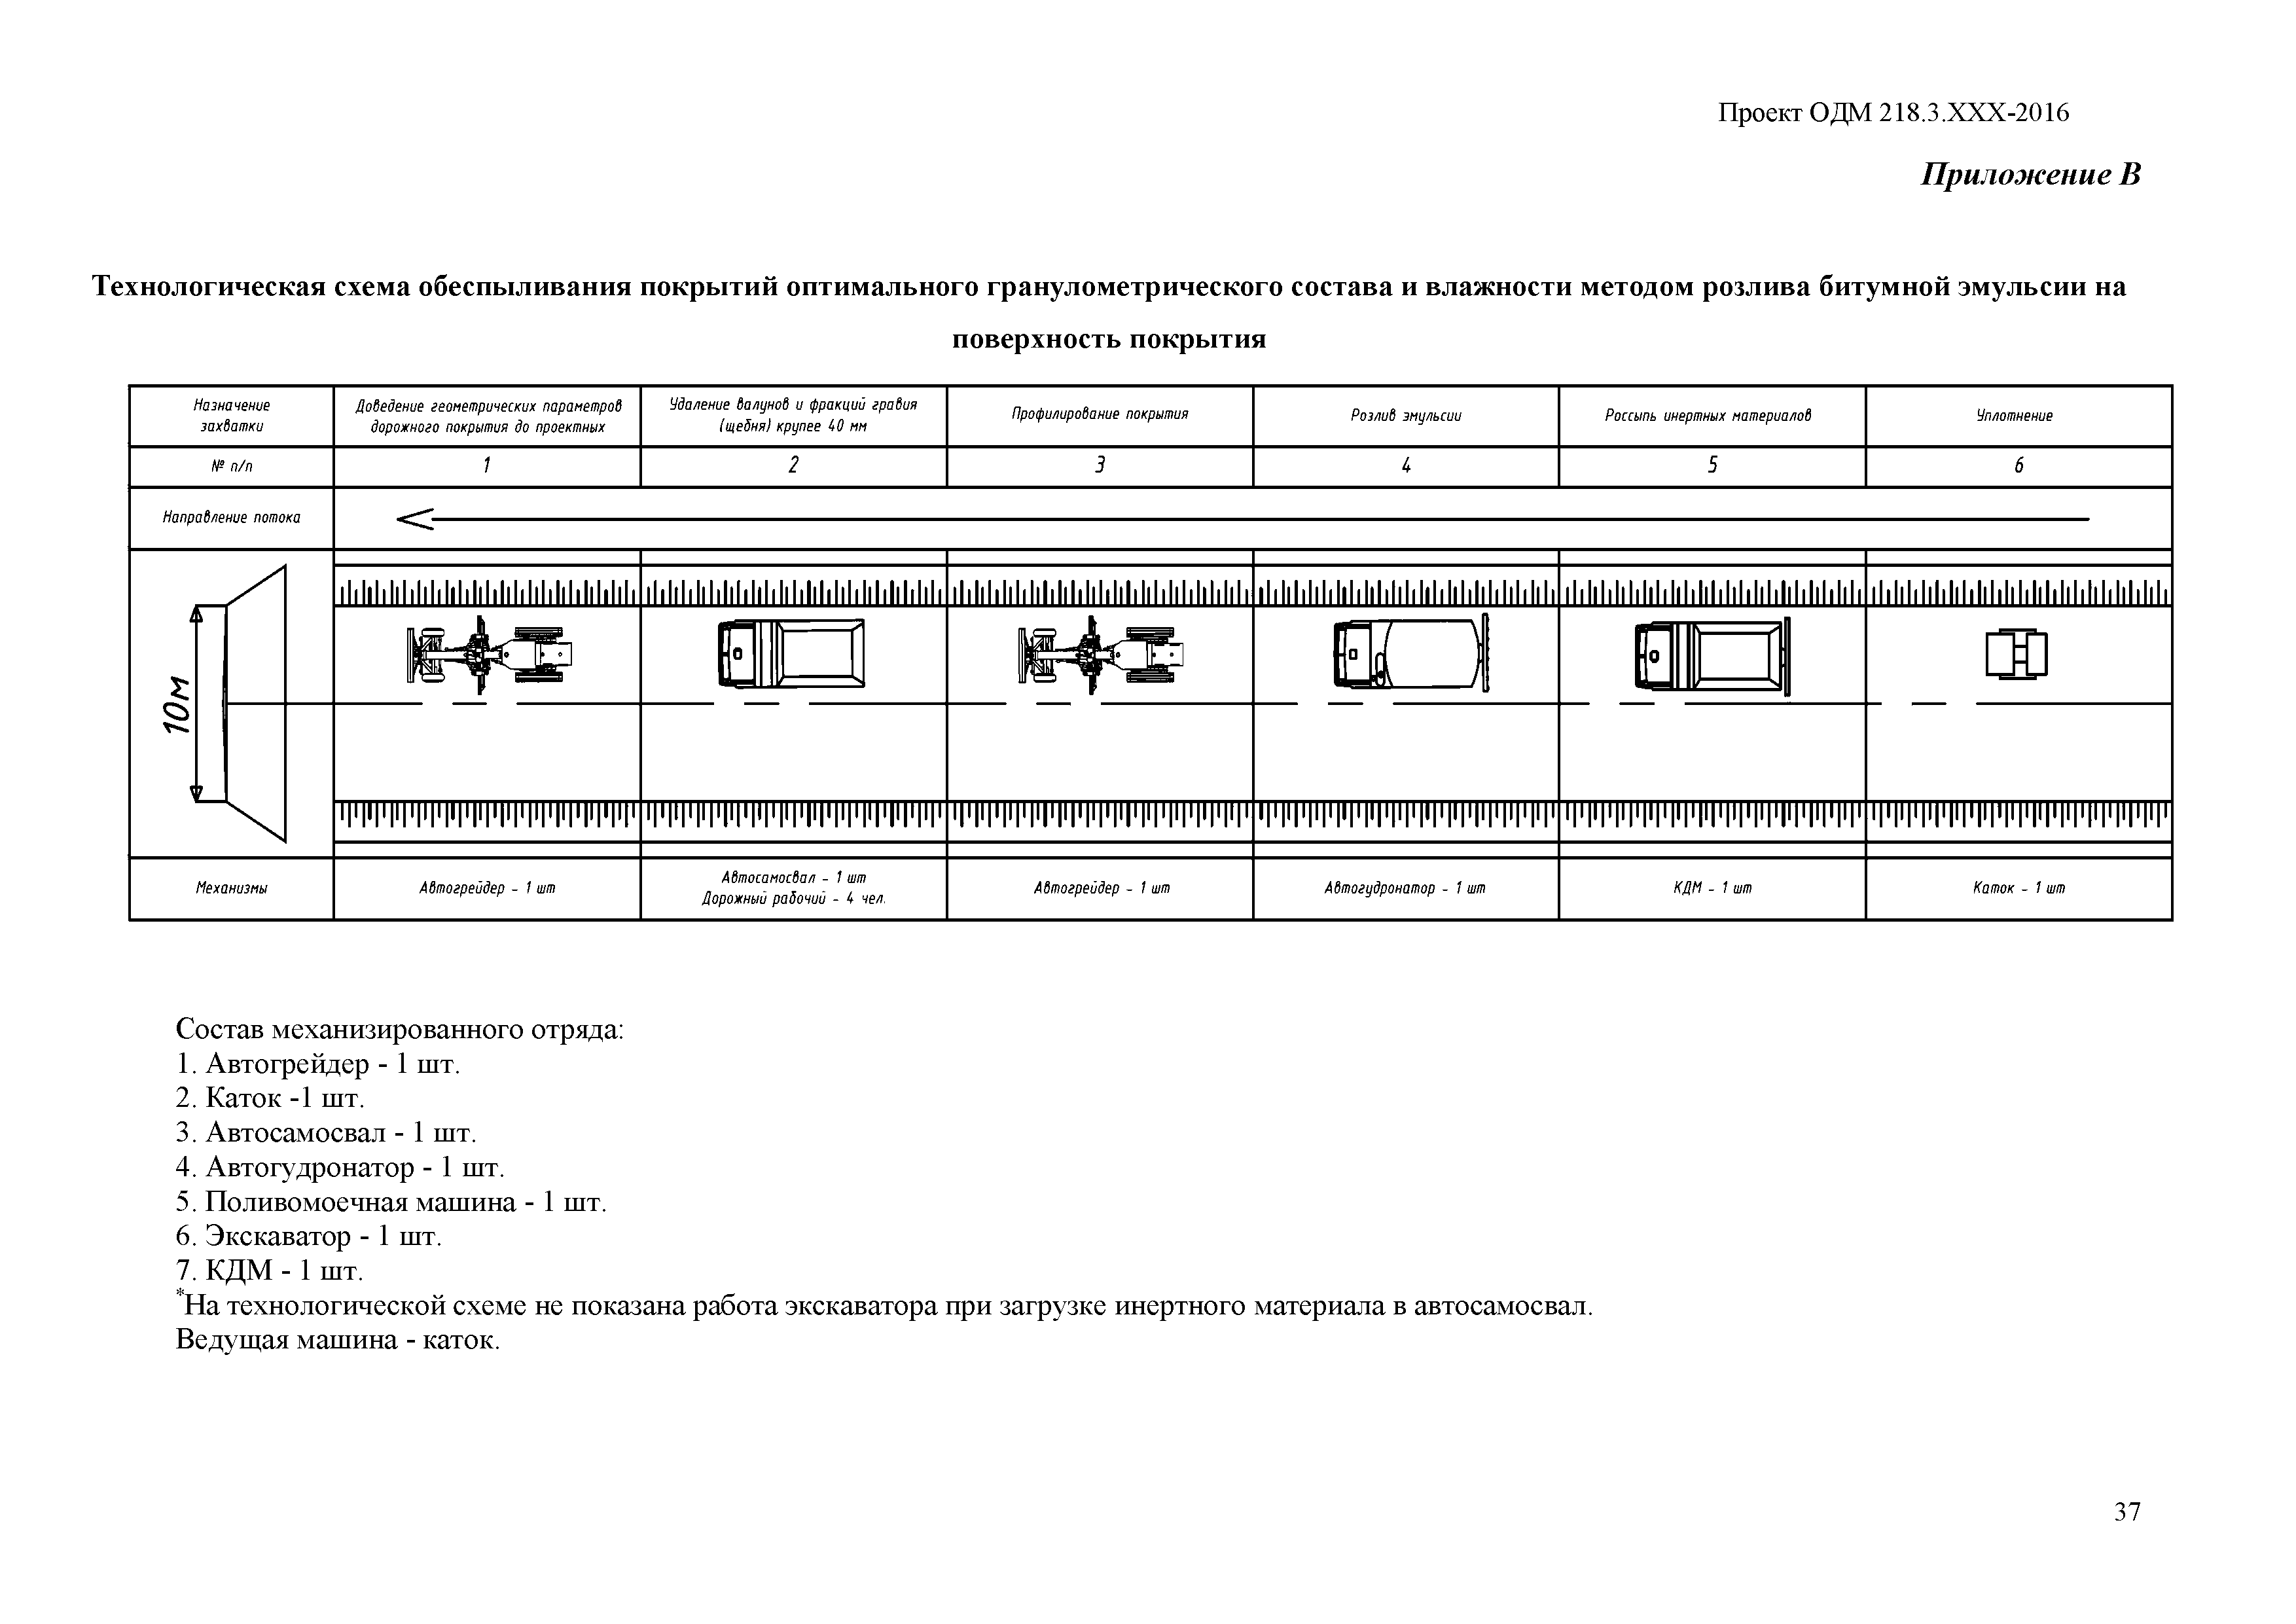 ОДМ 218.8.009-2017